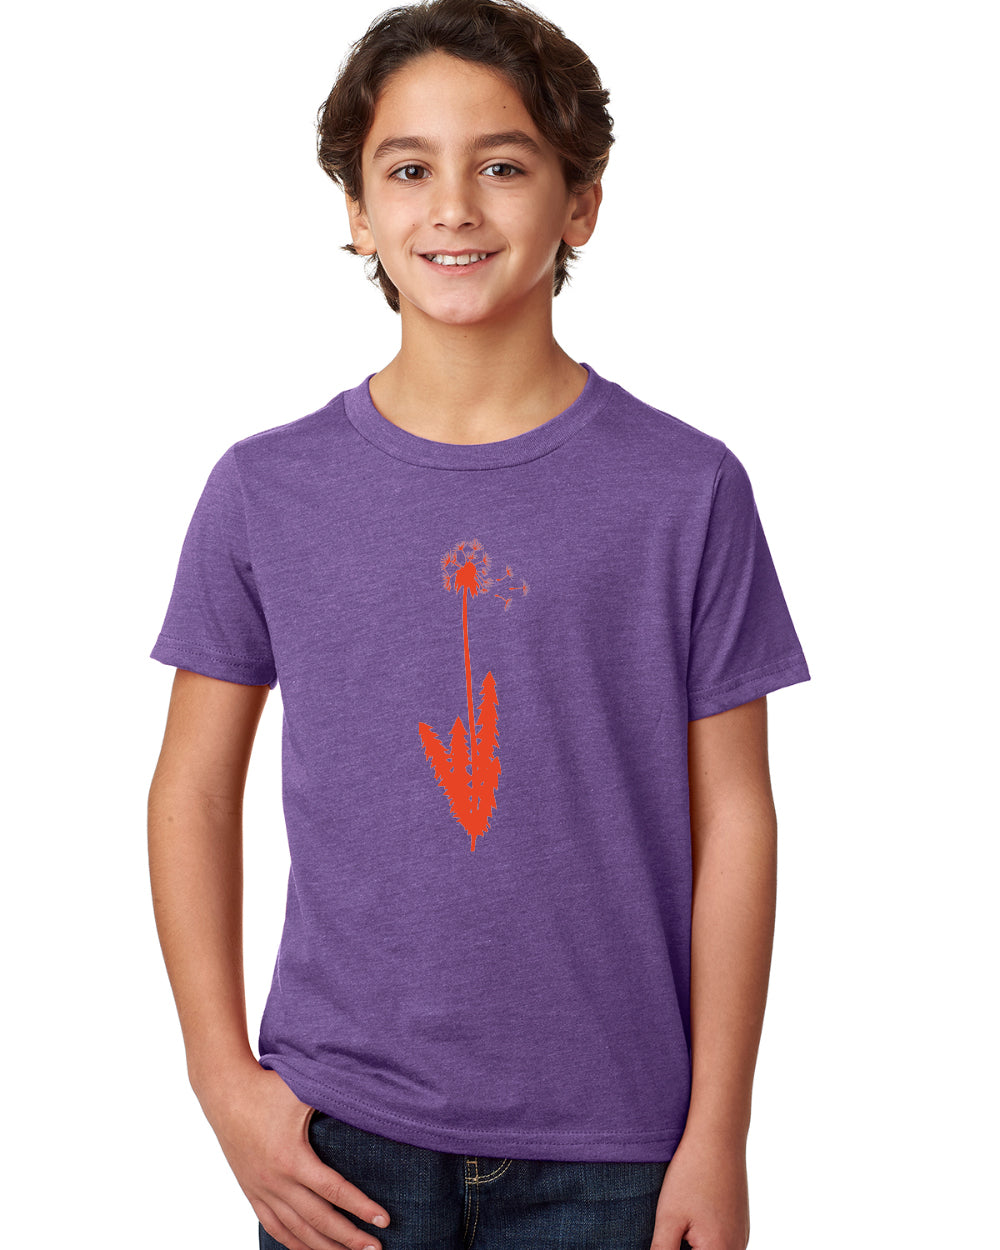 3 Wishes T-Shirt - Youth Purple Rush